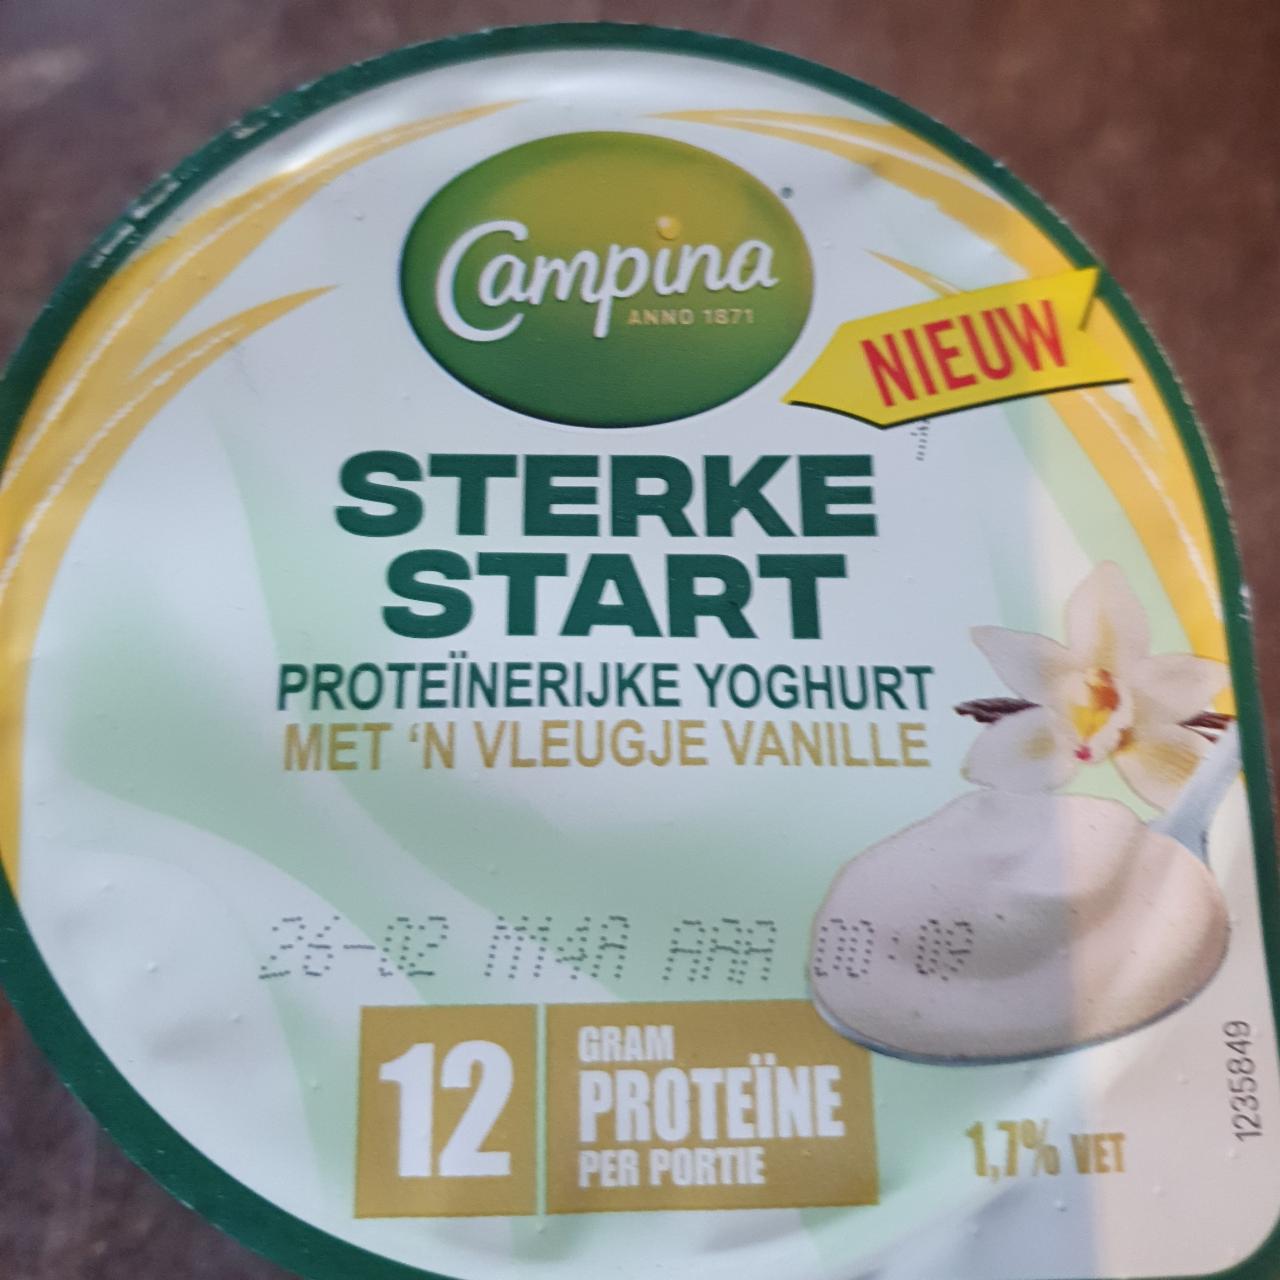 Fotografie - Sterke start yoghurt vanille Campina